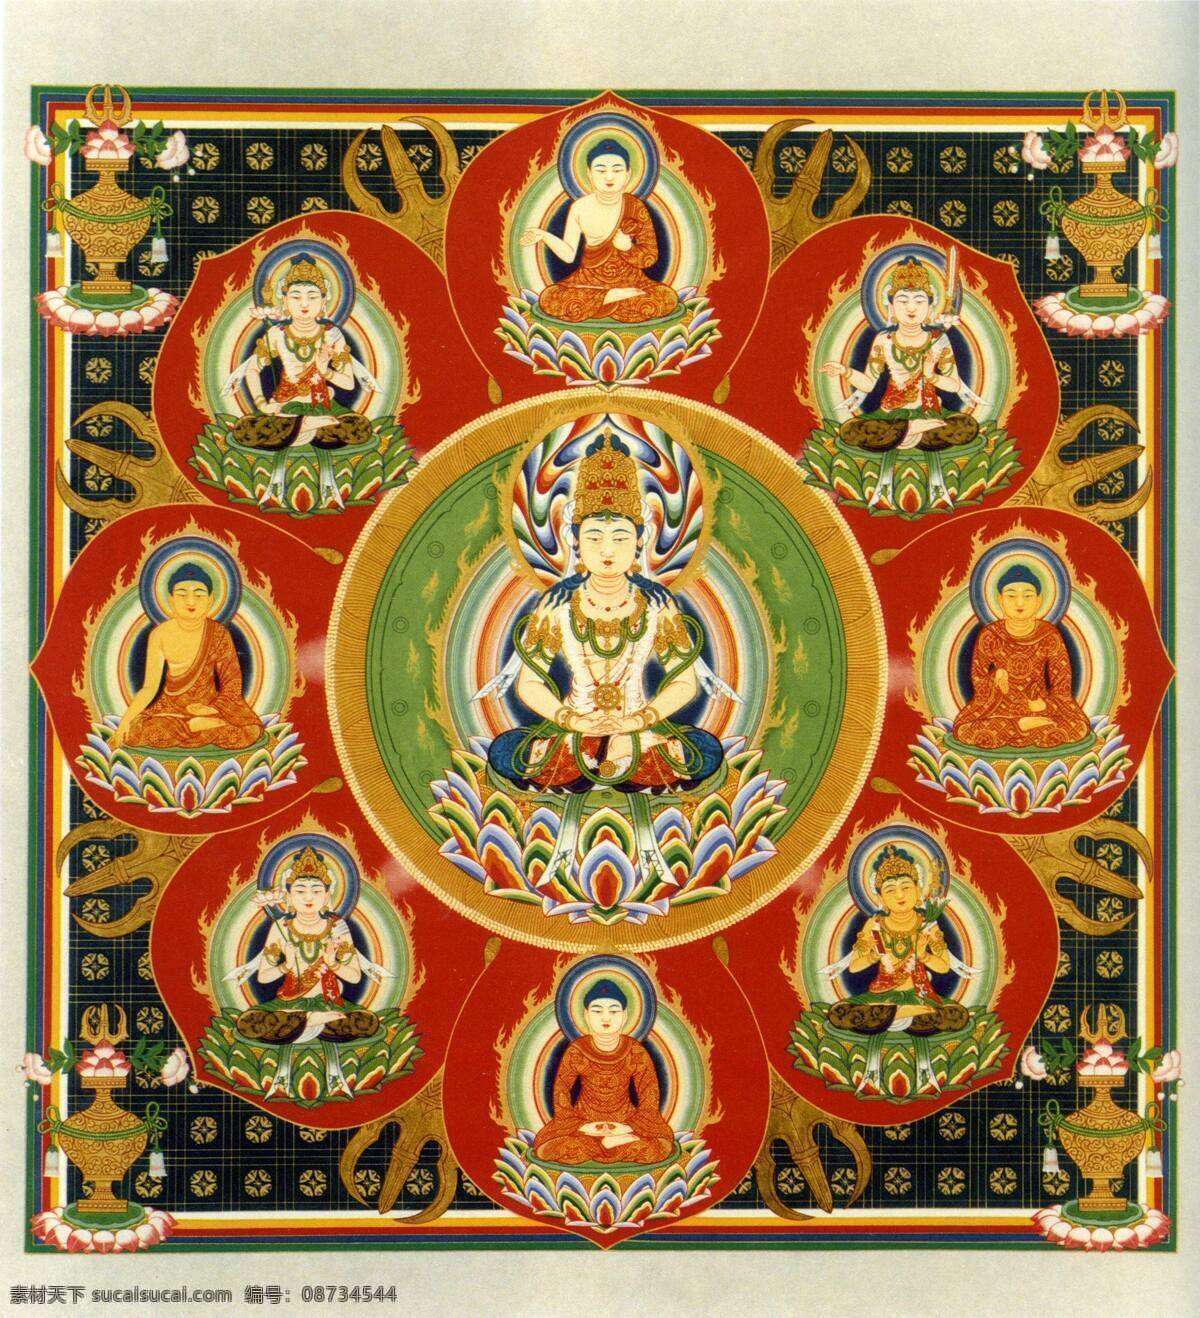 胎 藏 界 曼荼罗 之中 台 八 叶 院 佛教 密宗 宗教信仰 文化艺术